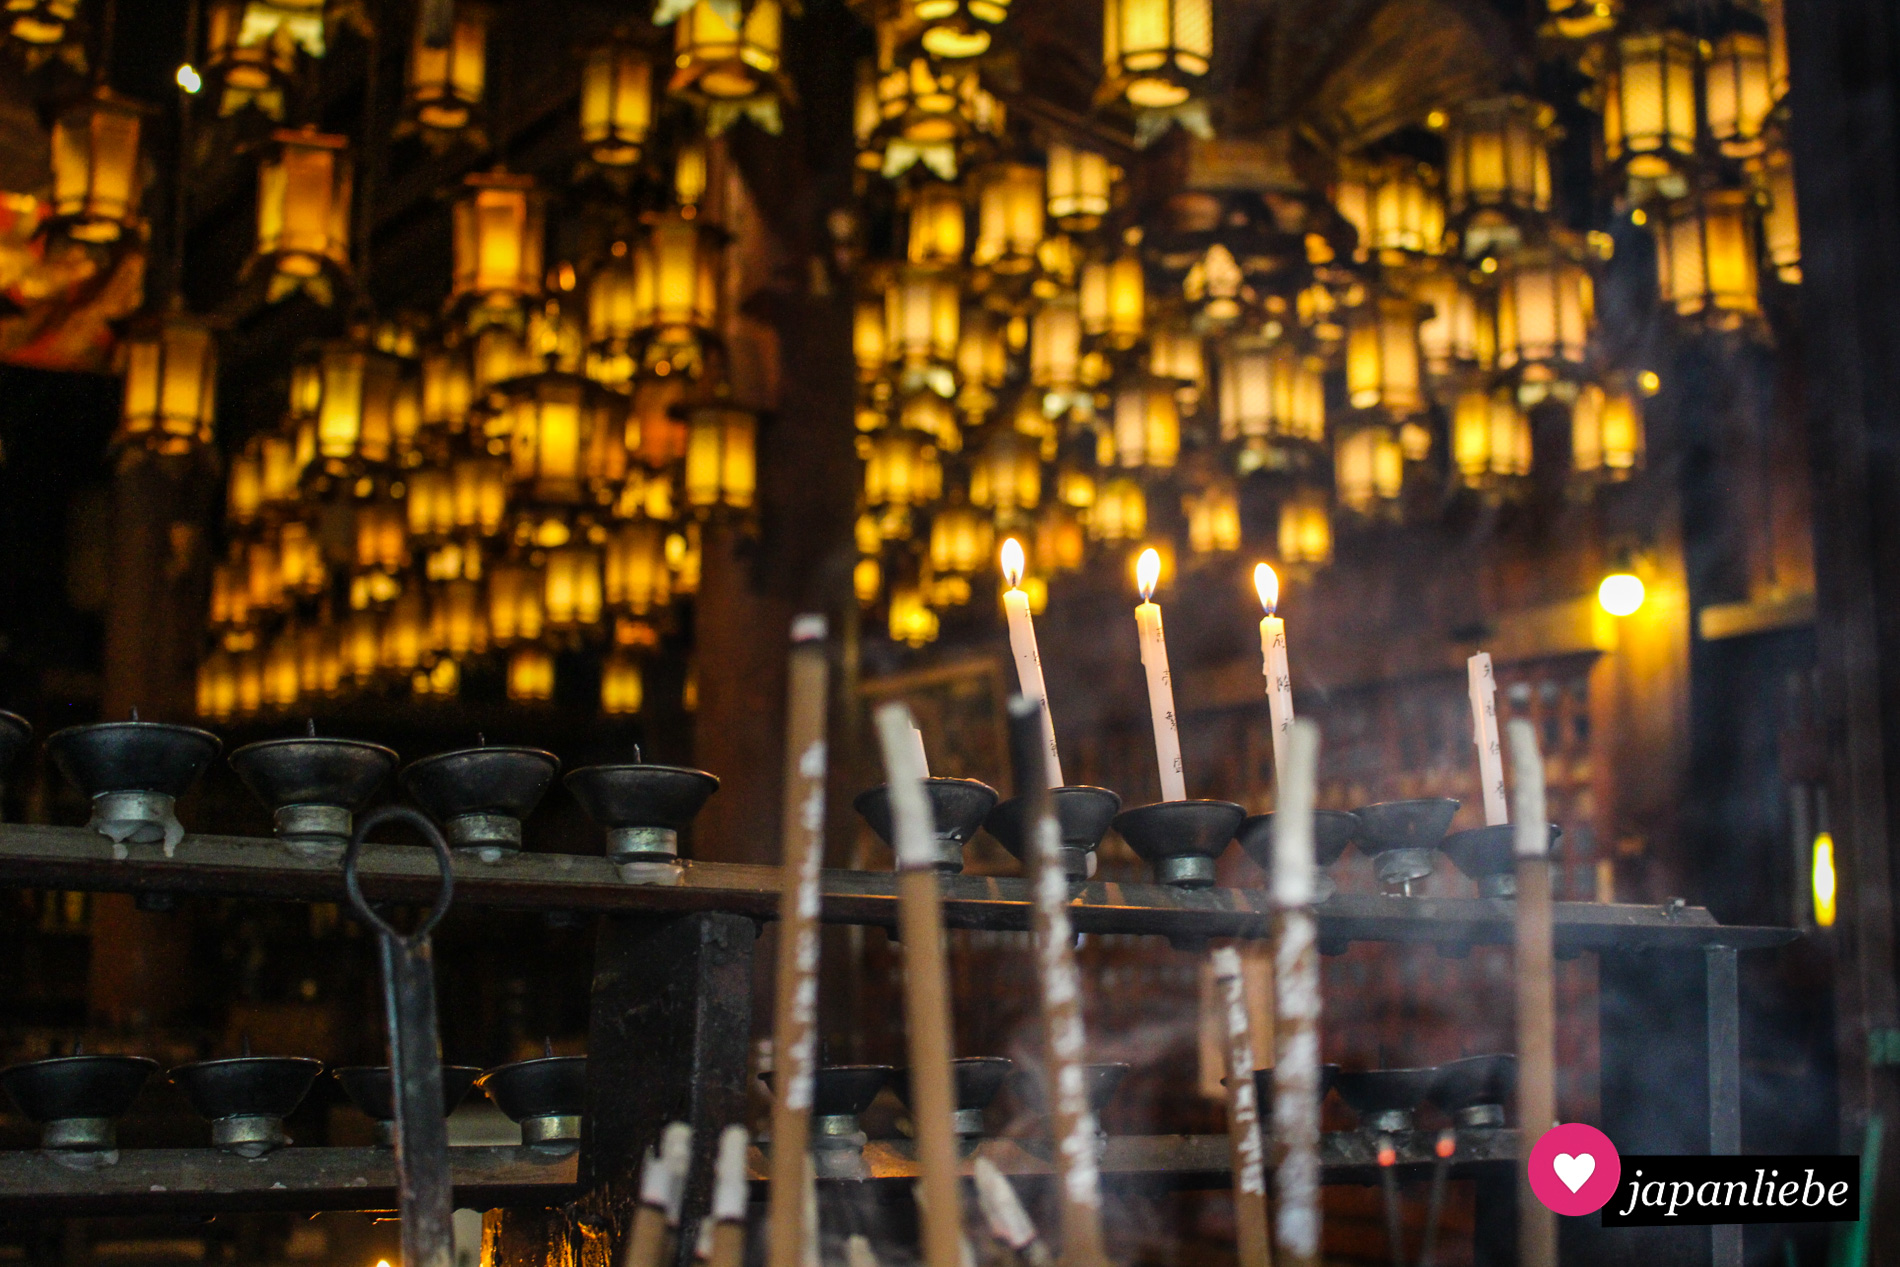 Pilger entzünden traditionell Räucherstäbchen und Kerzen an buddhistischen Tempeln. So auch am Ryōzen-ji-Tempel.